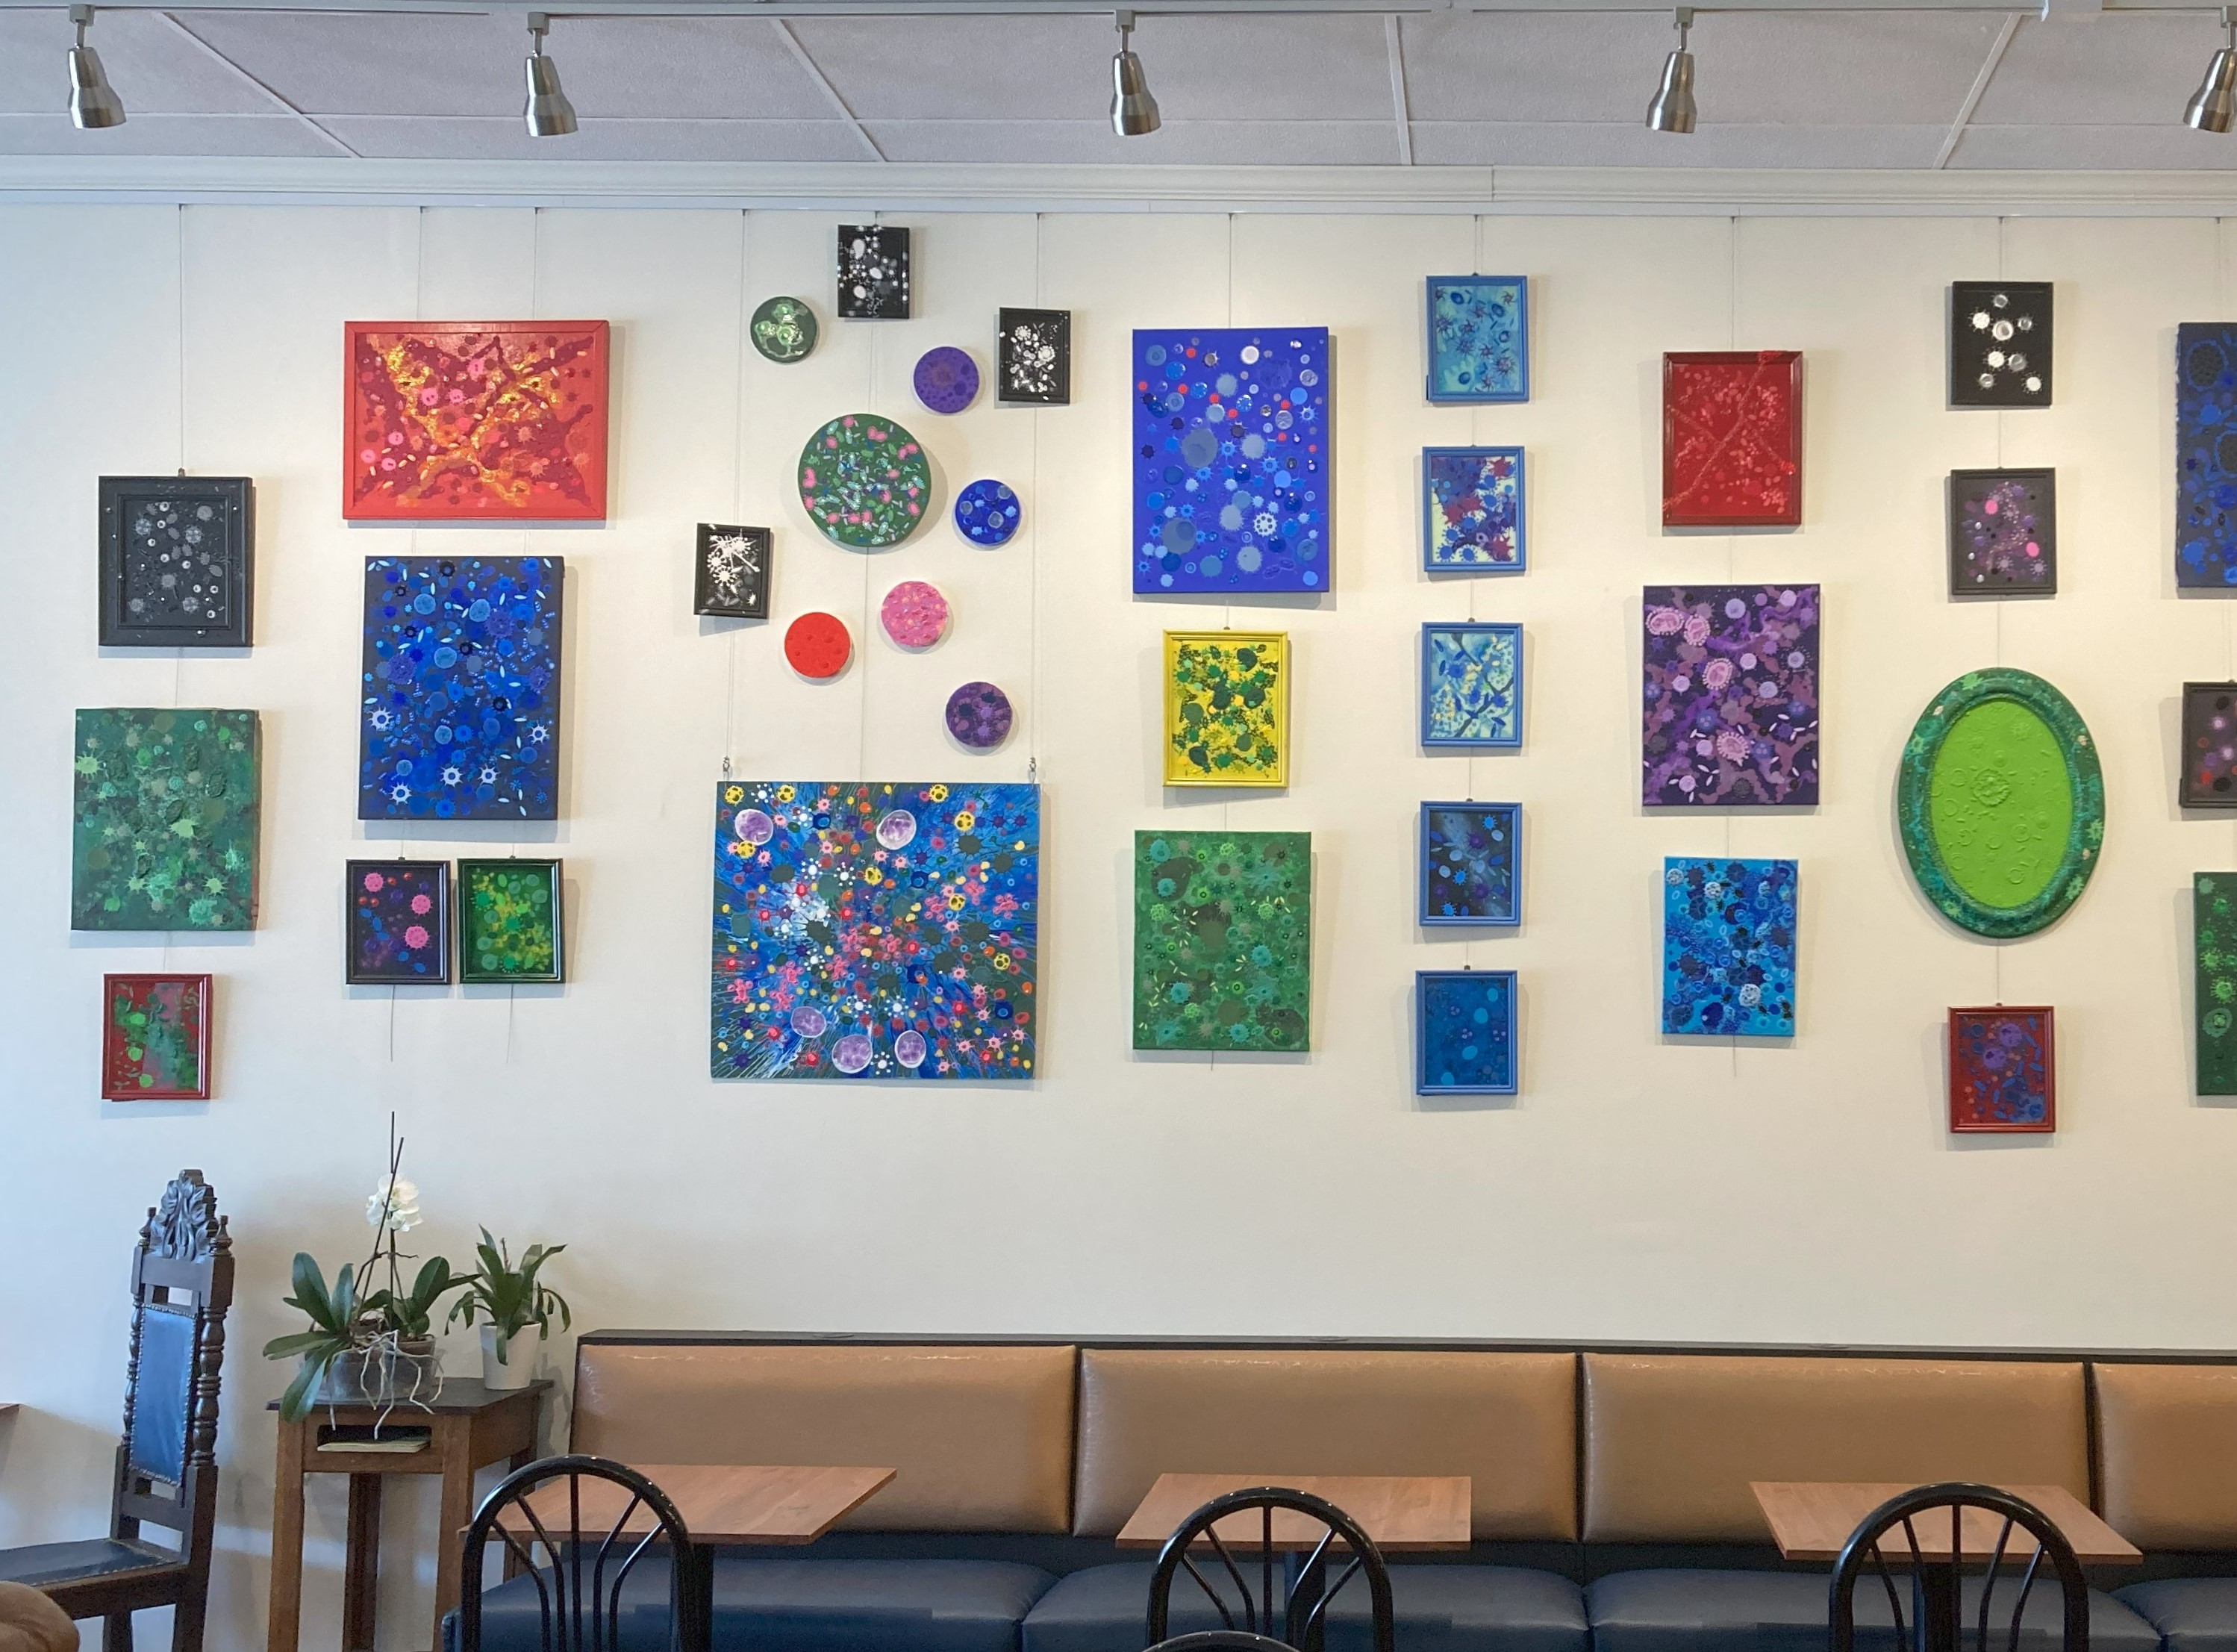 Amanda Hauman showcasing Big Rock Coffee's display utilizing their Gallery System